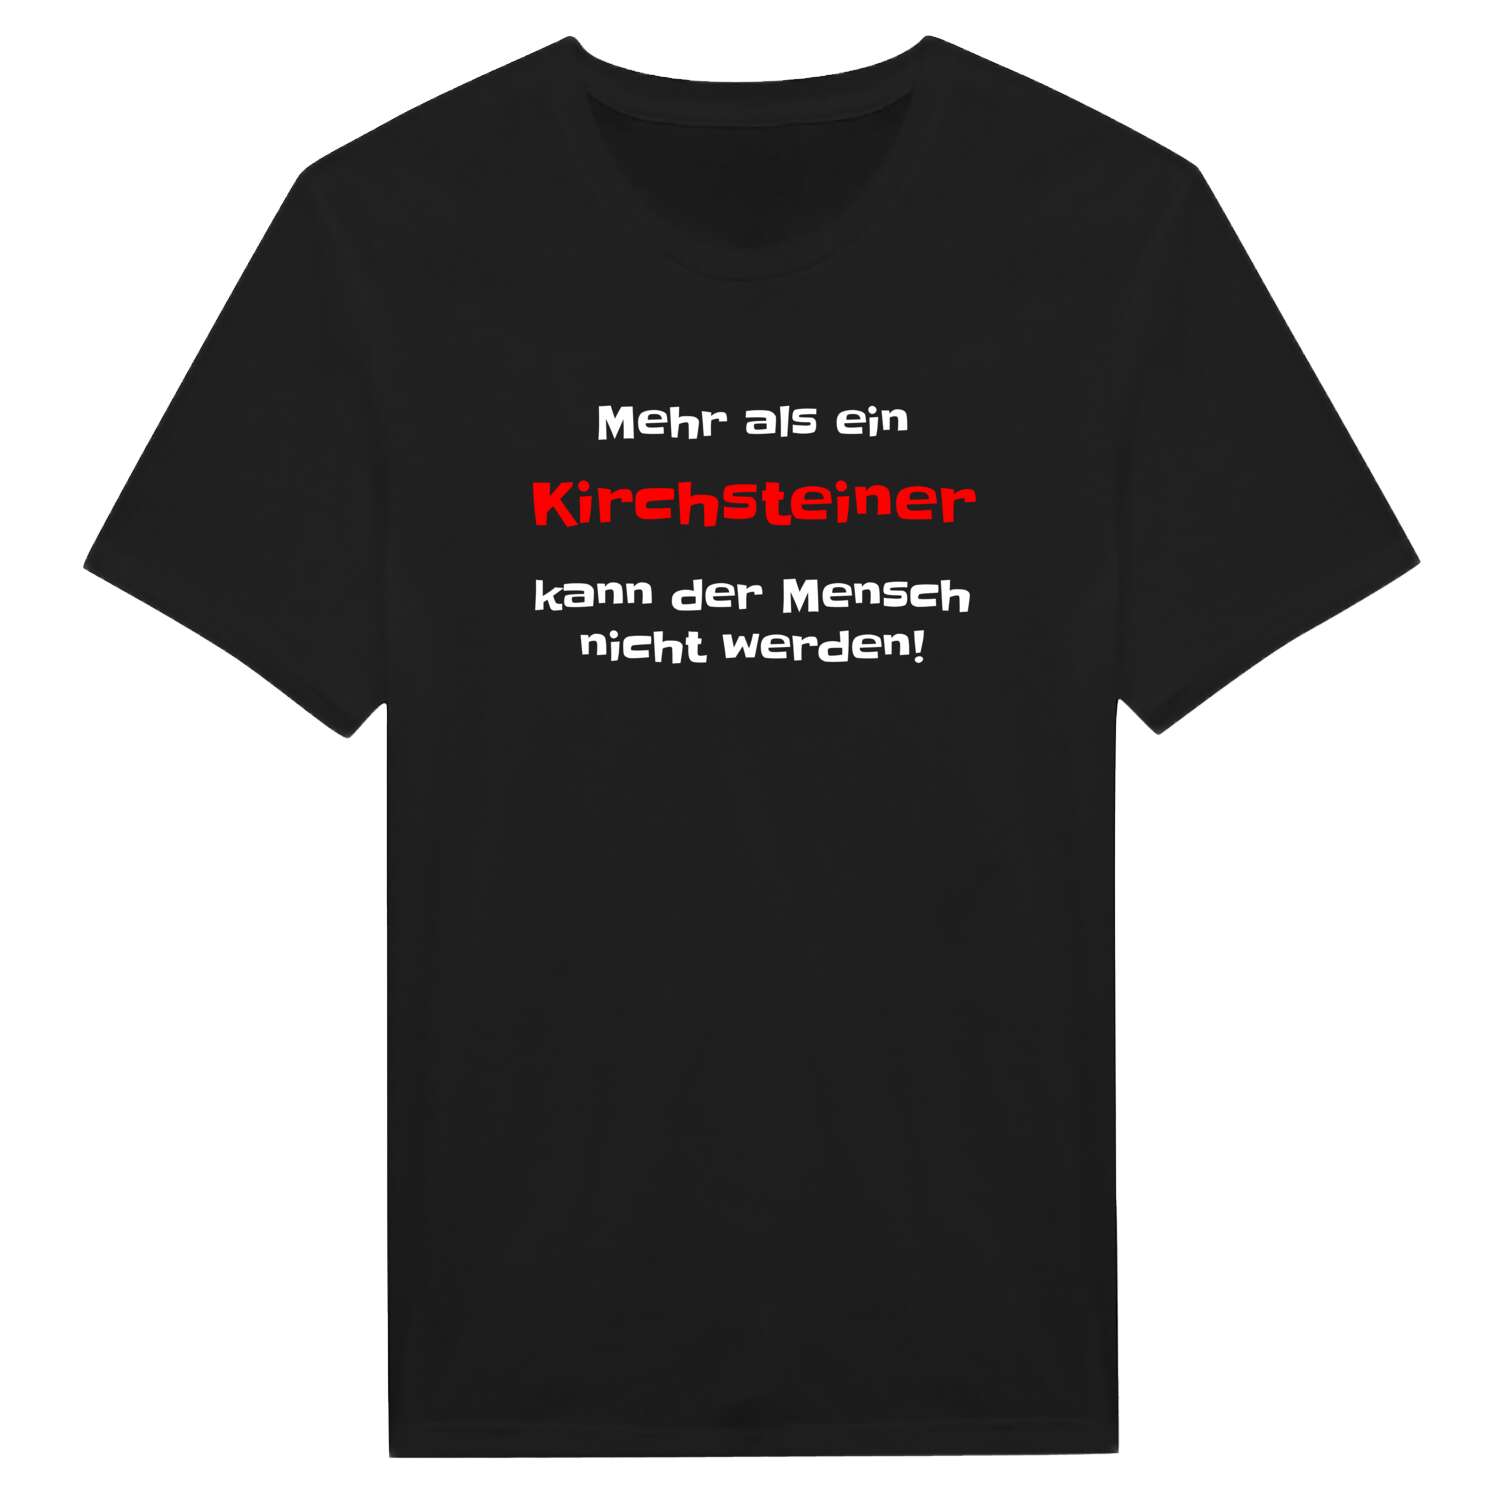 Kirchstein T-Shirt »Mehr als ein«